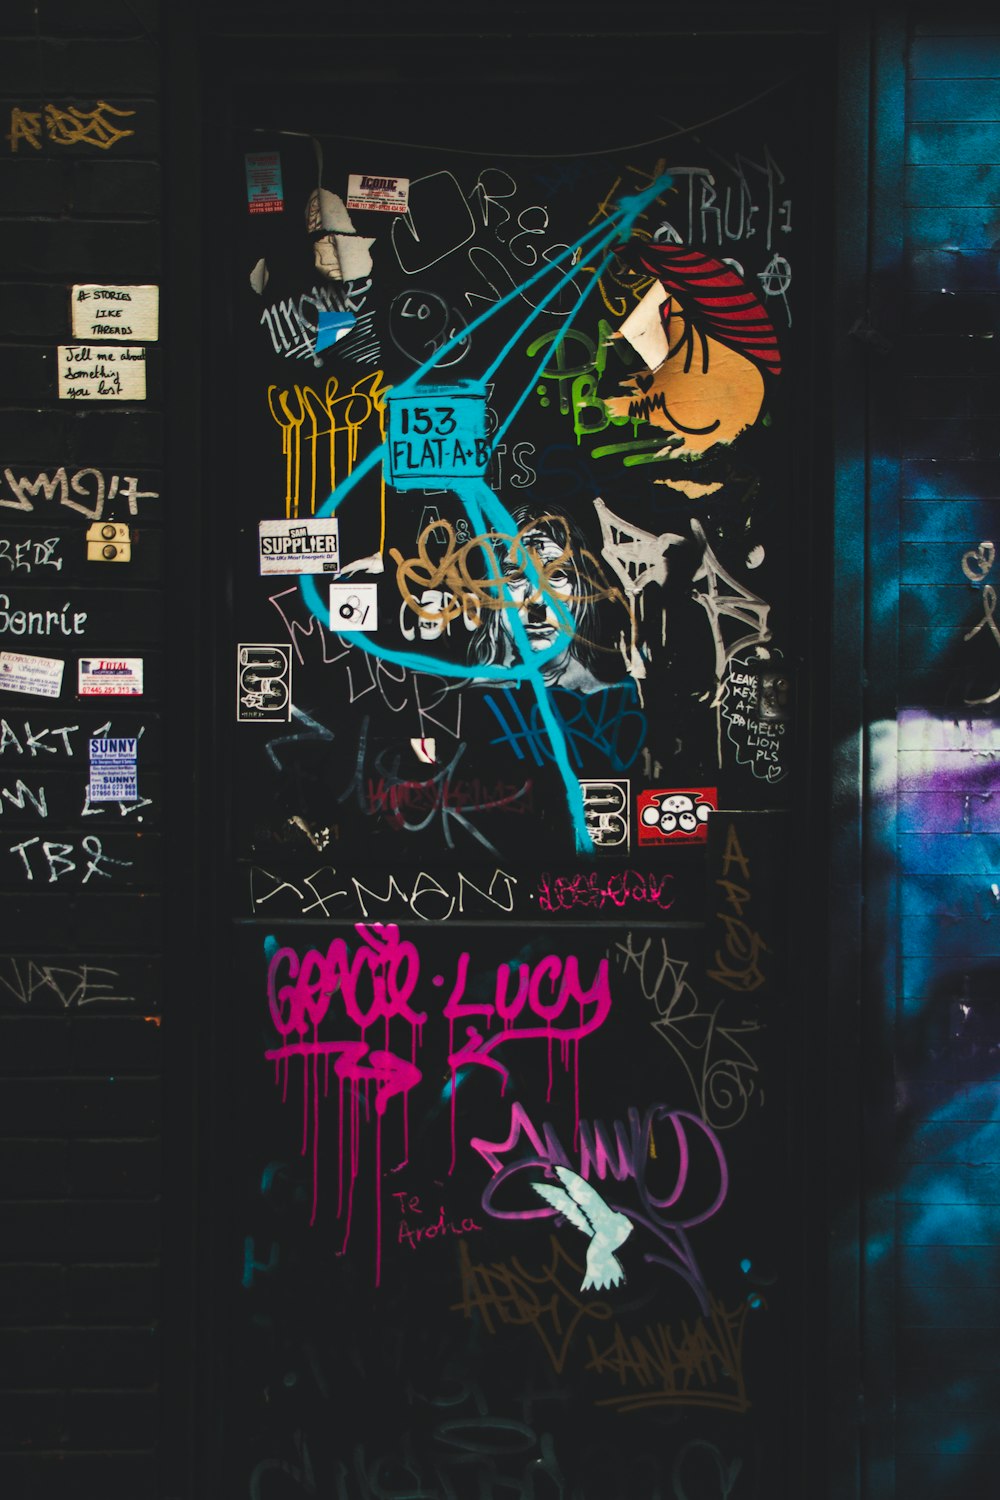 Una puerta cubierta de graffiti y pegatinas